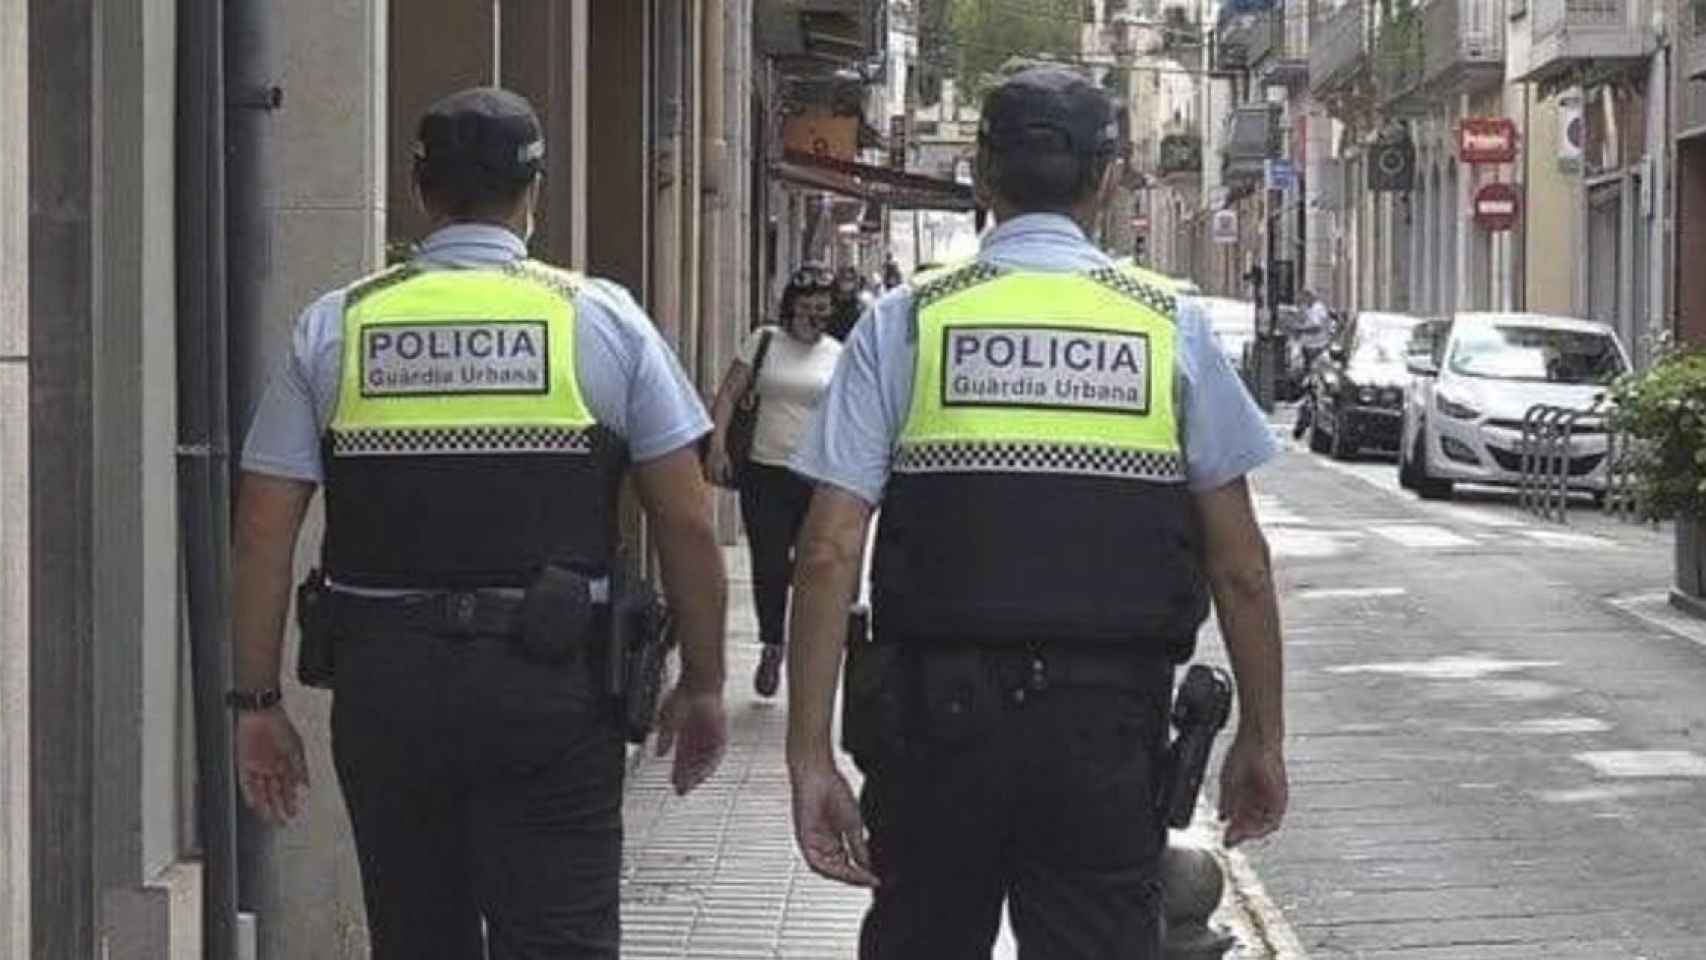 Imagen de archivo de dos agentes de la Policía de Figueres / GUFIGUERES